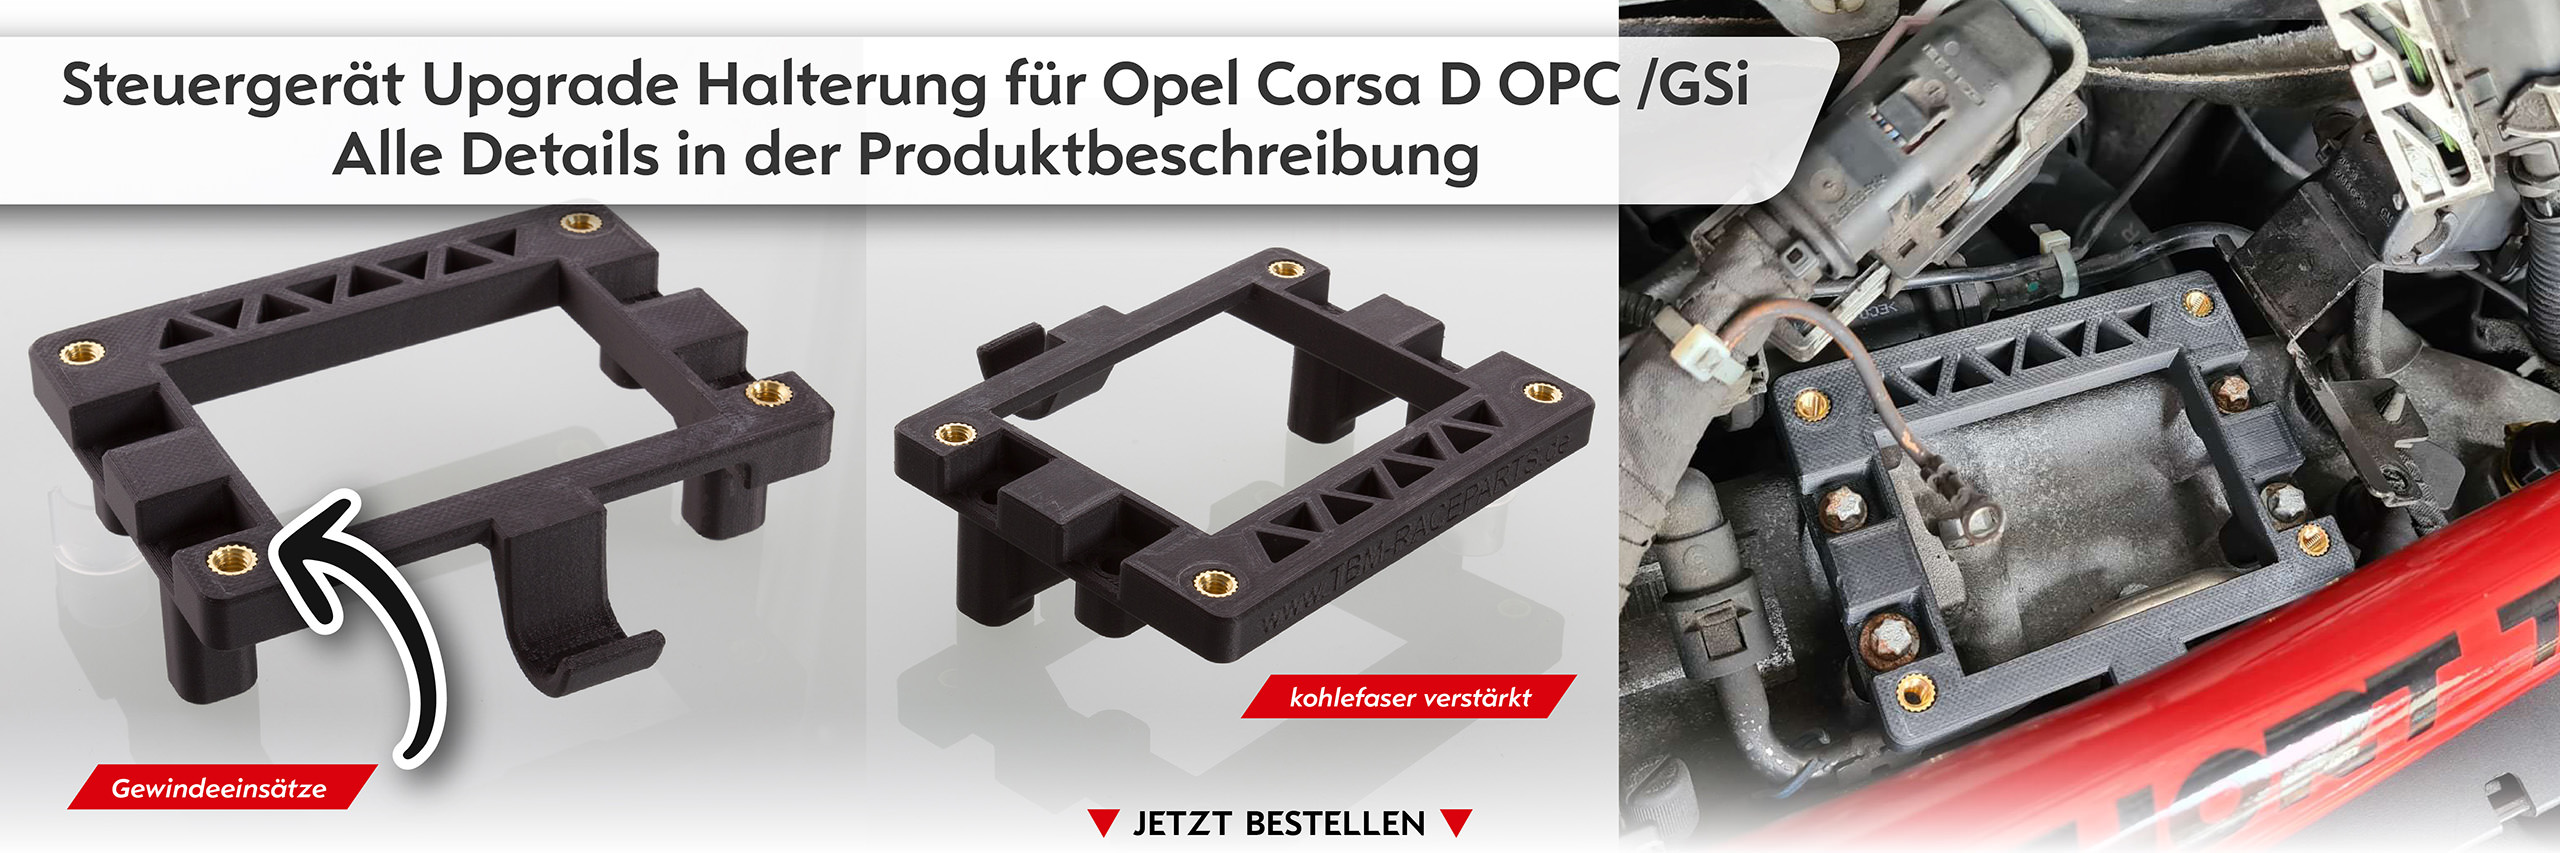 Steuergerät Upgrade Halterung Opel Corsa D OPC & GSi